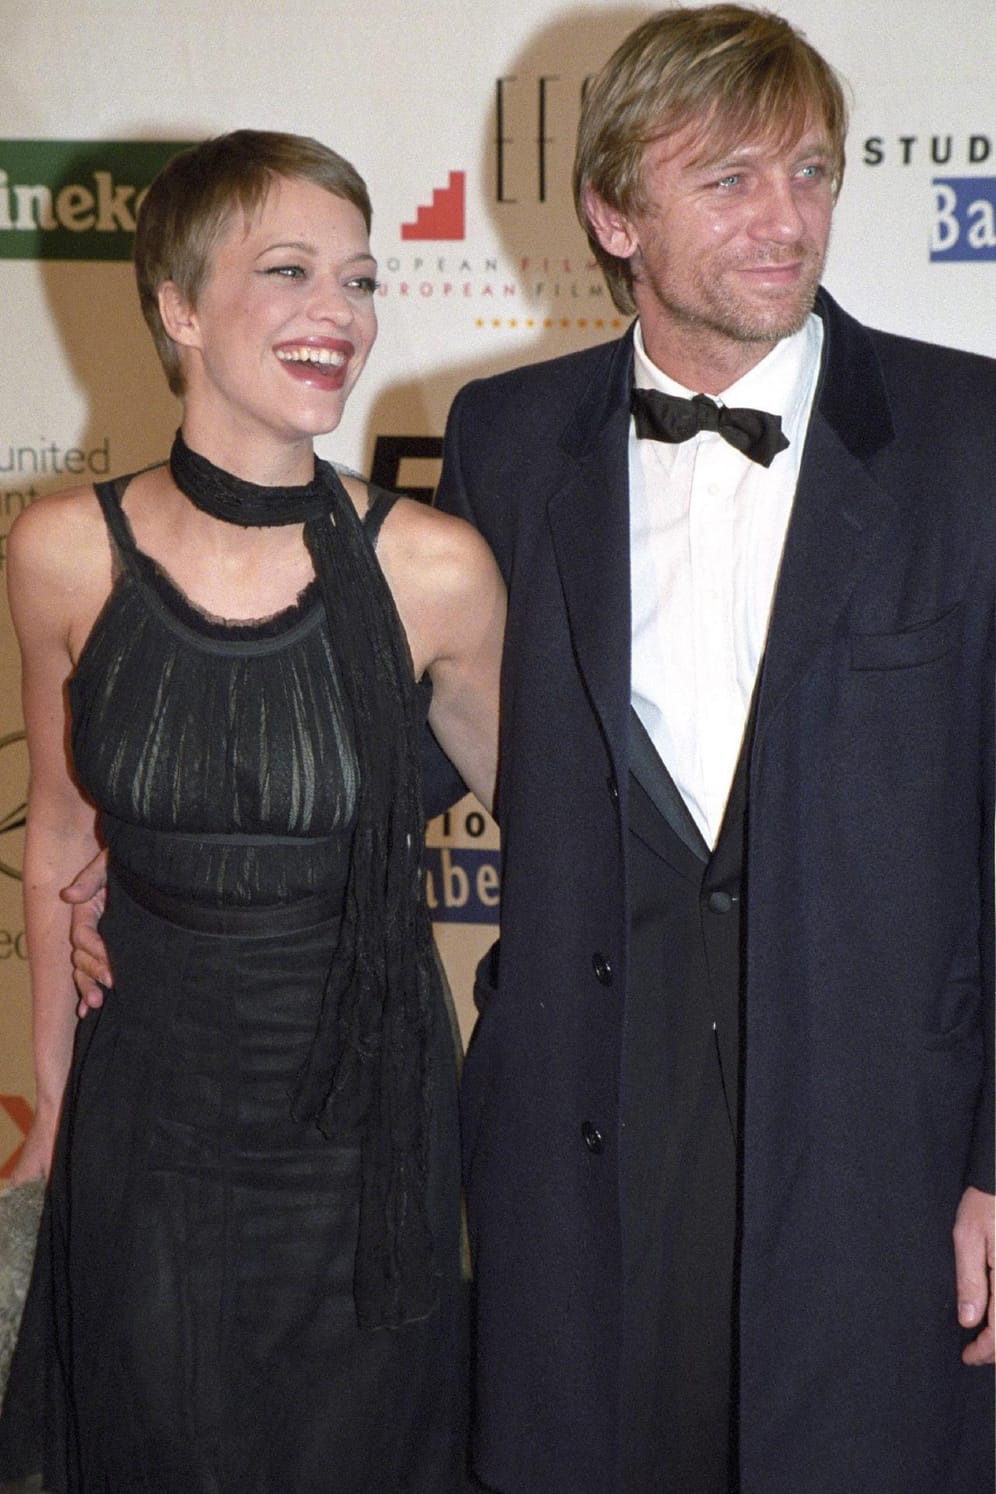 1997 - 2004: Sieben Jahre war Heike Makatsch mit "James Bond"-Star Daniel Craig liiert. 2004 ging die Beziehung in die Brüche.